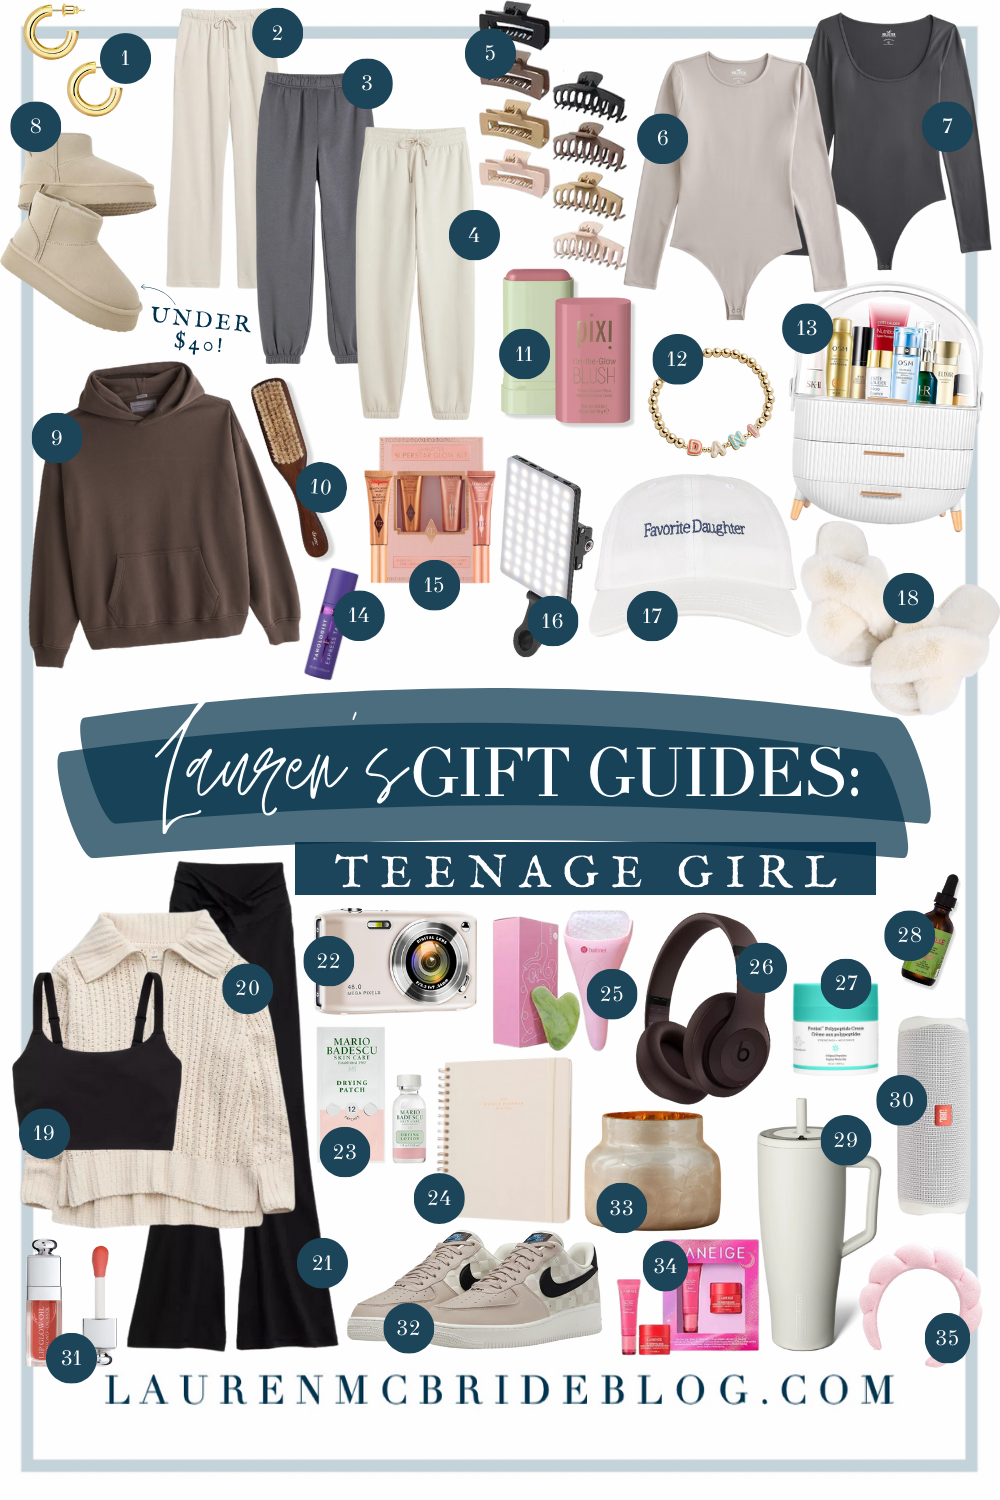 54 Best Gifts for Tween Girls 2023